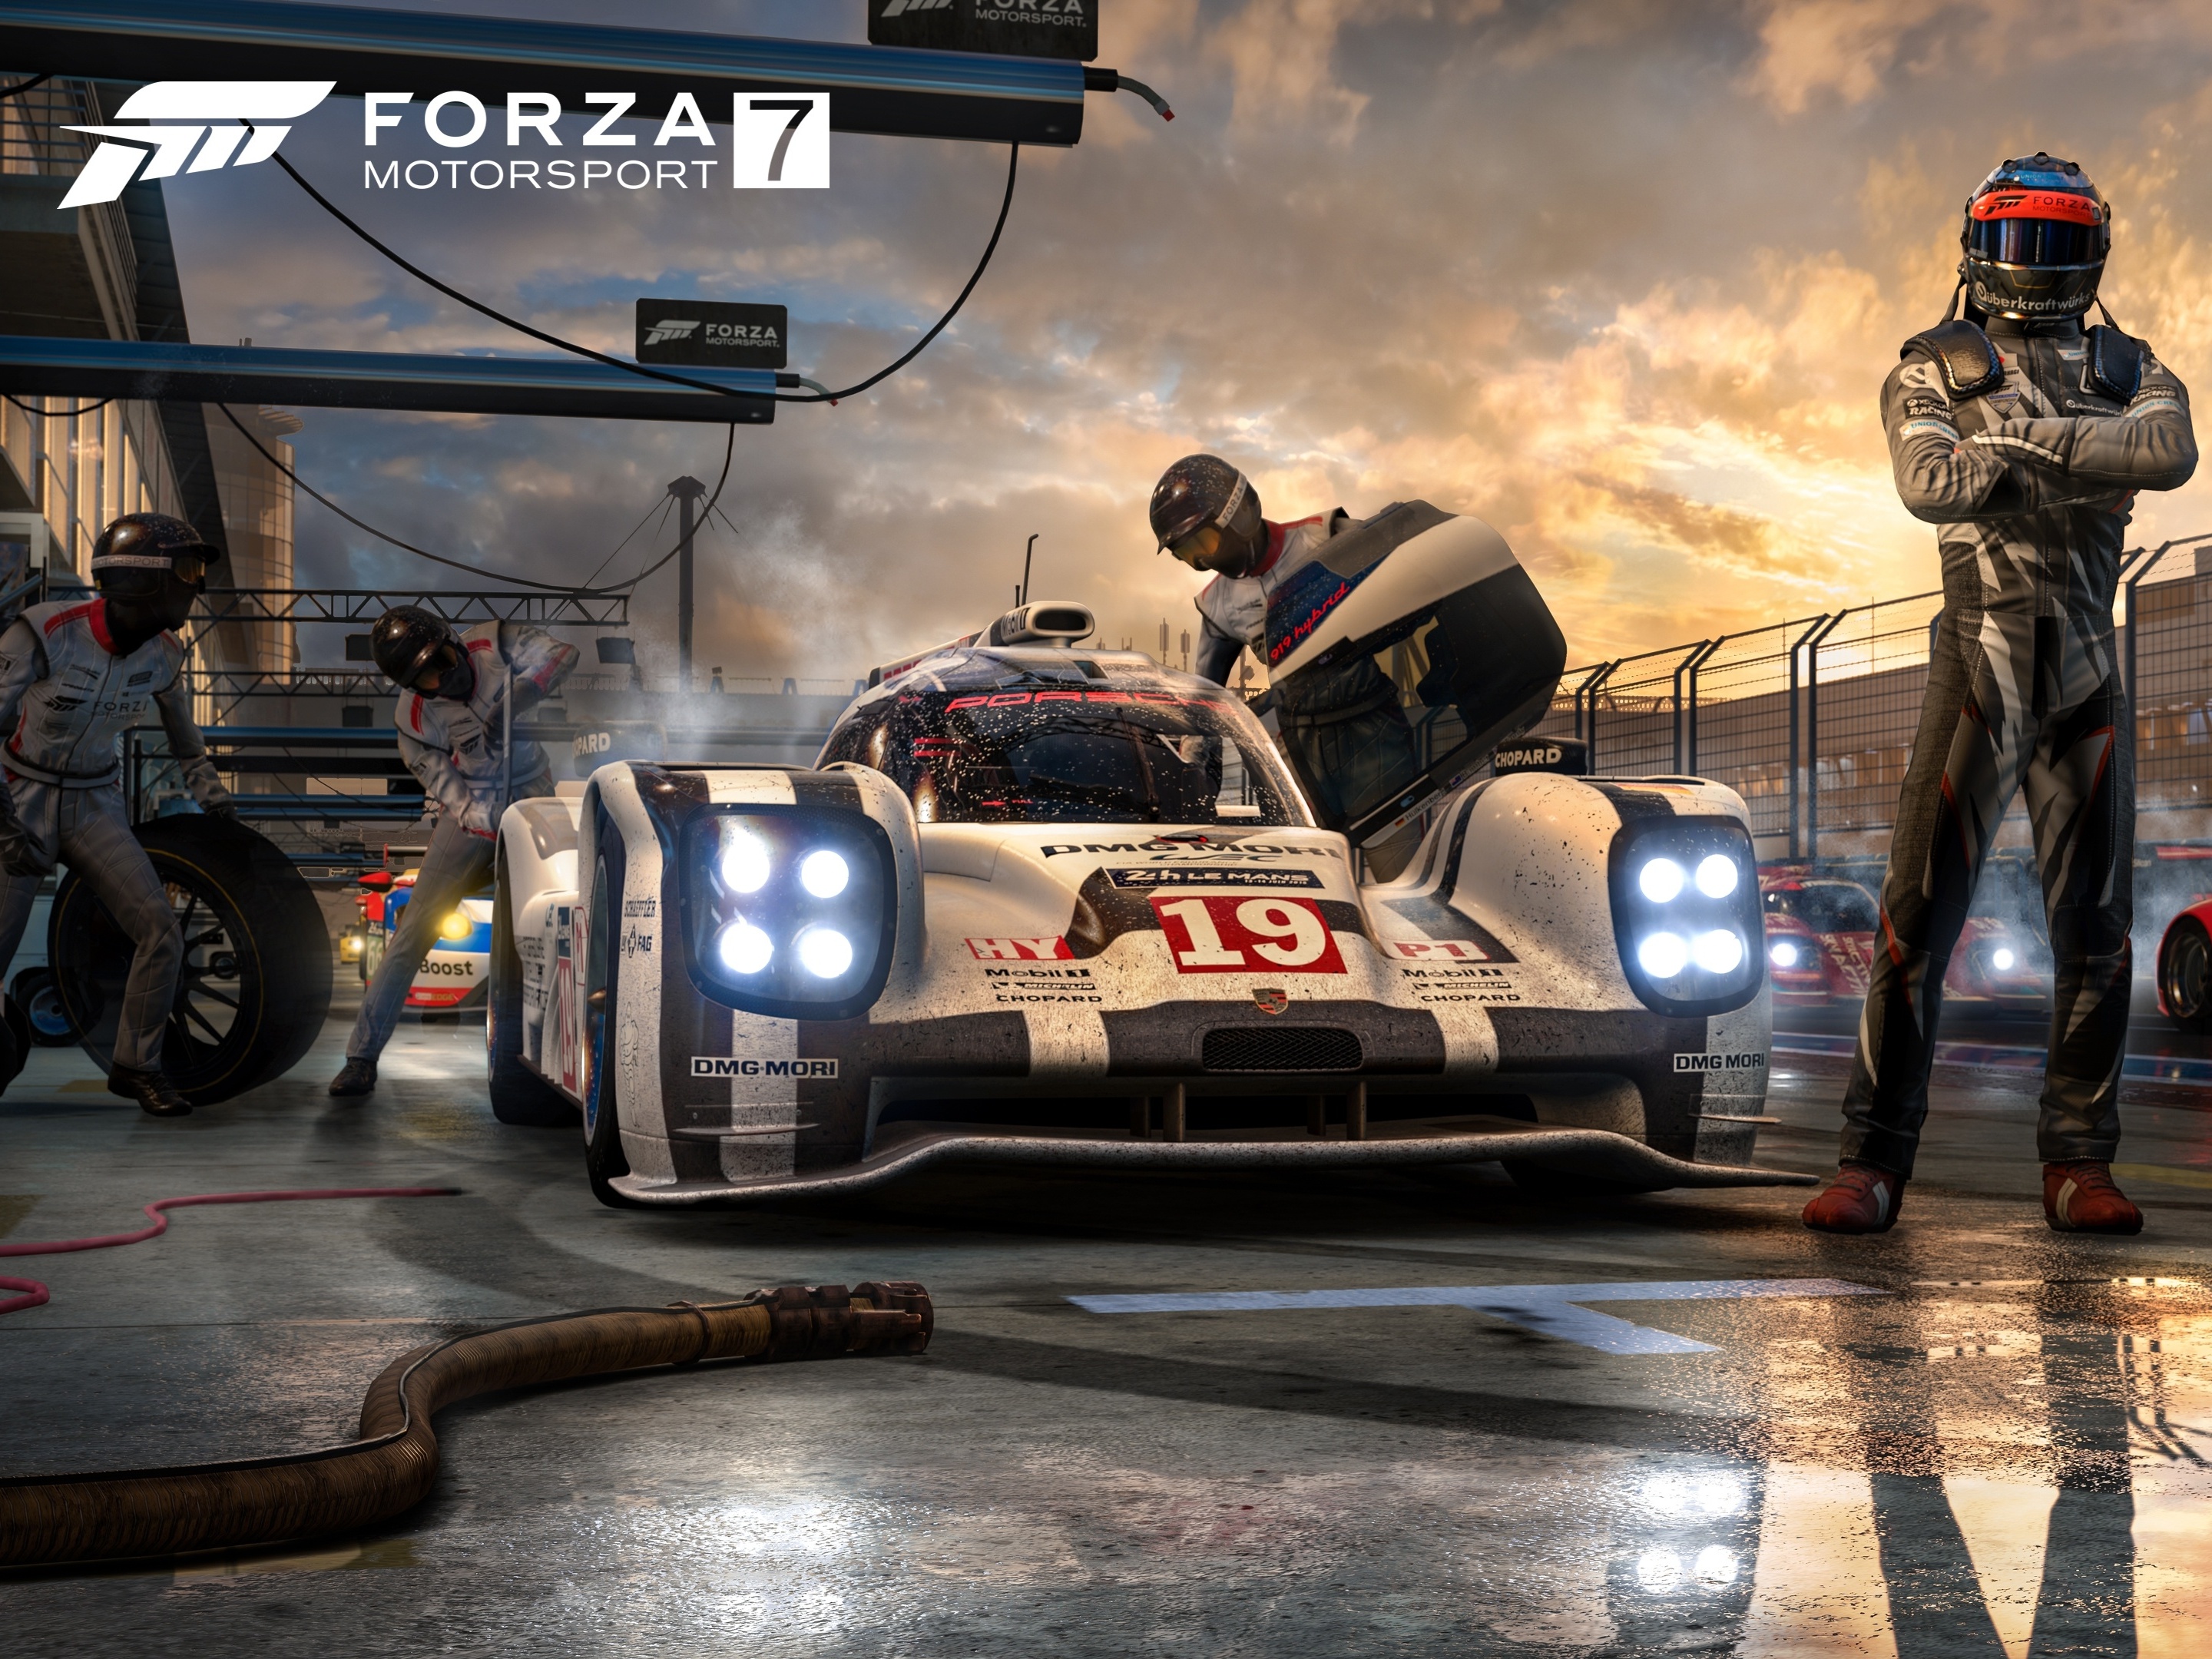 Review: 'Forza Motorsport' oferece simulador sério para fãs de